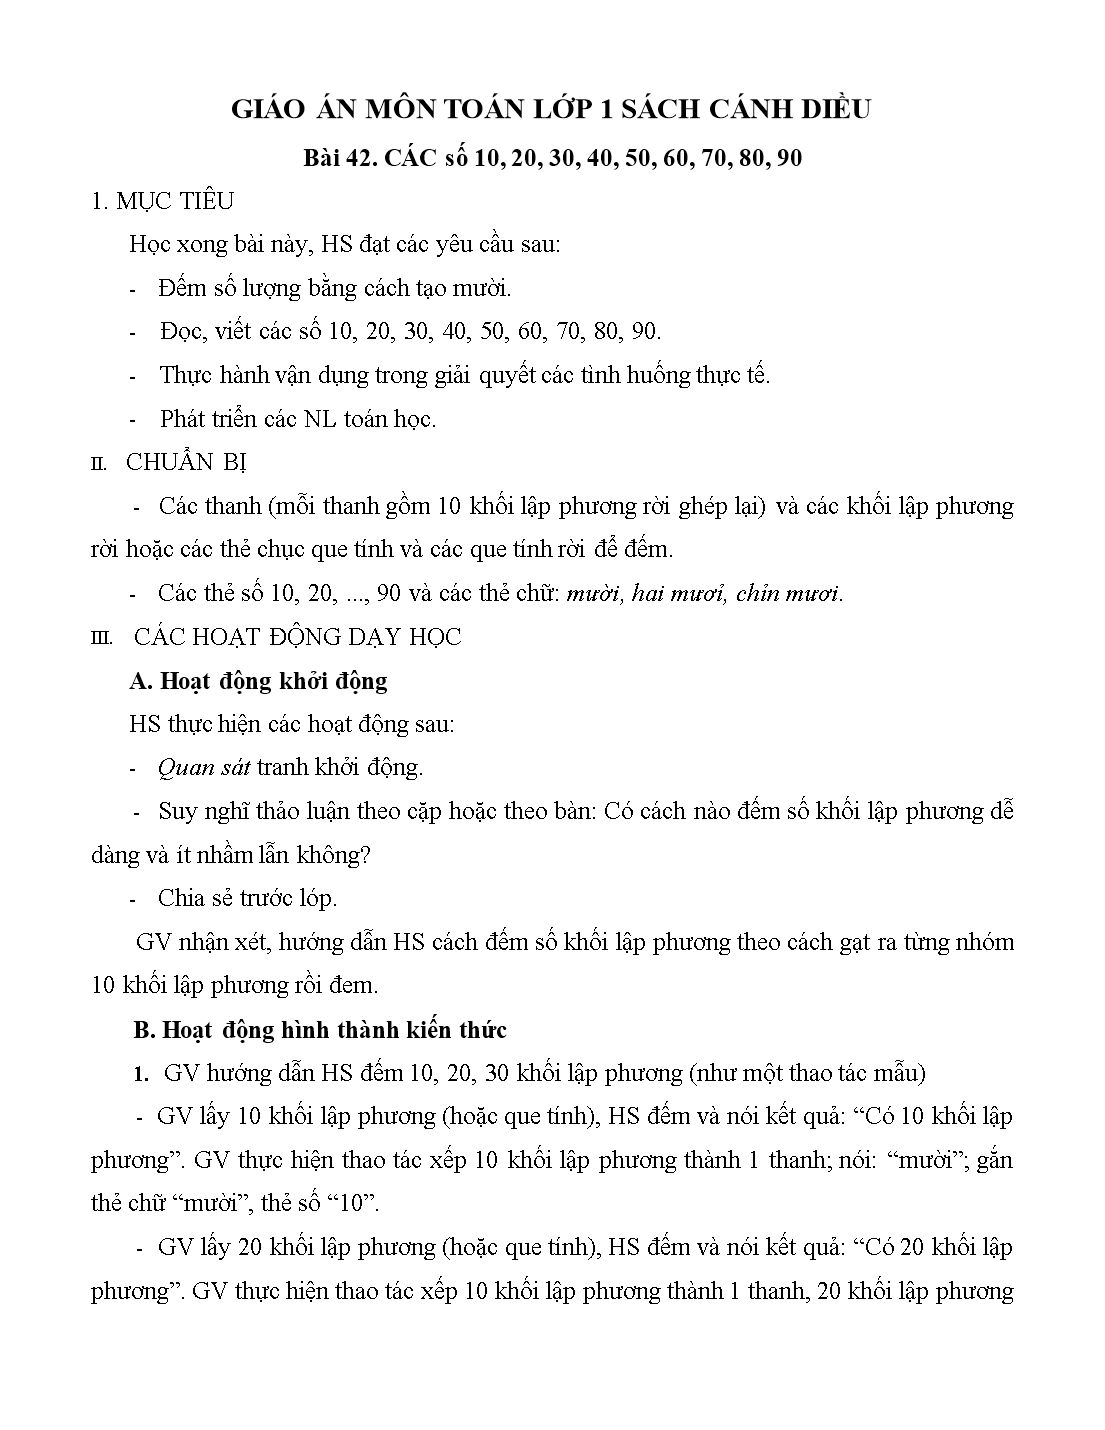 Giáo án môn Toán Lớp 1 (Cánh diều) - Bài 42: Các số 10, 20, 30, 40, 50, 60, 70, 80, 90 trang 1